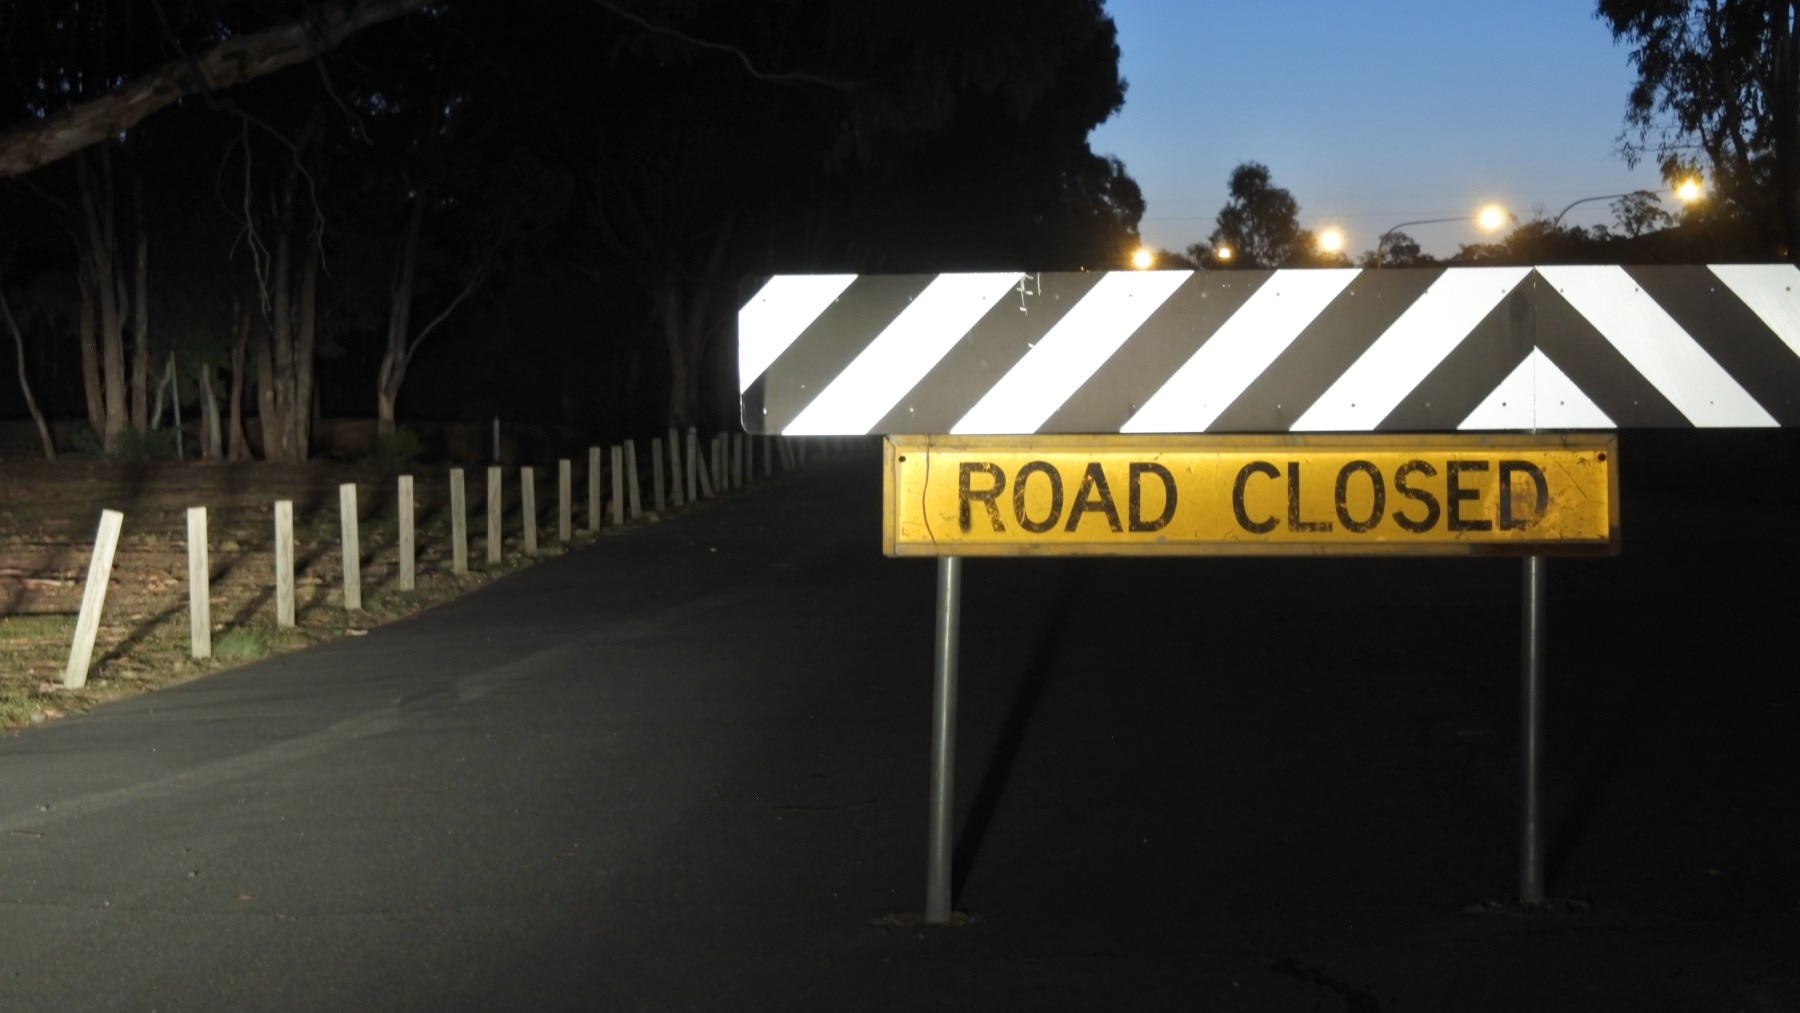 Road closed at night 